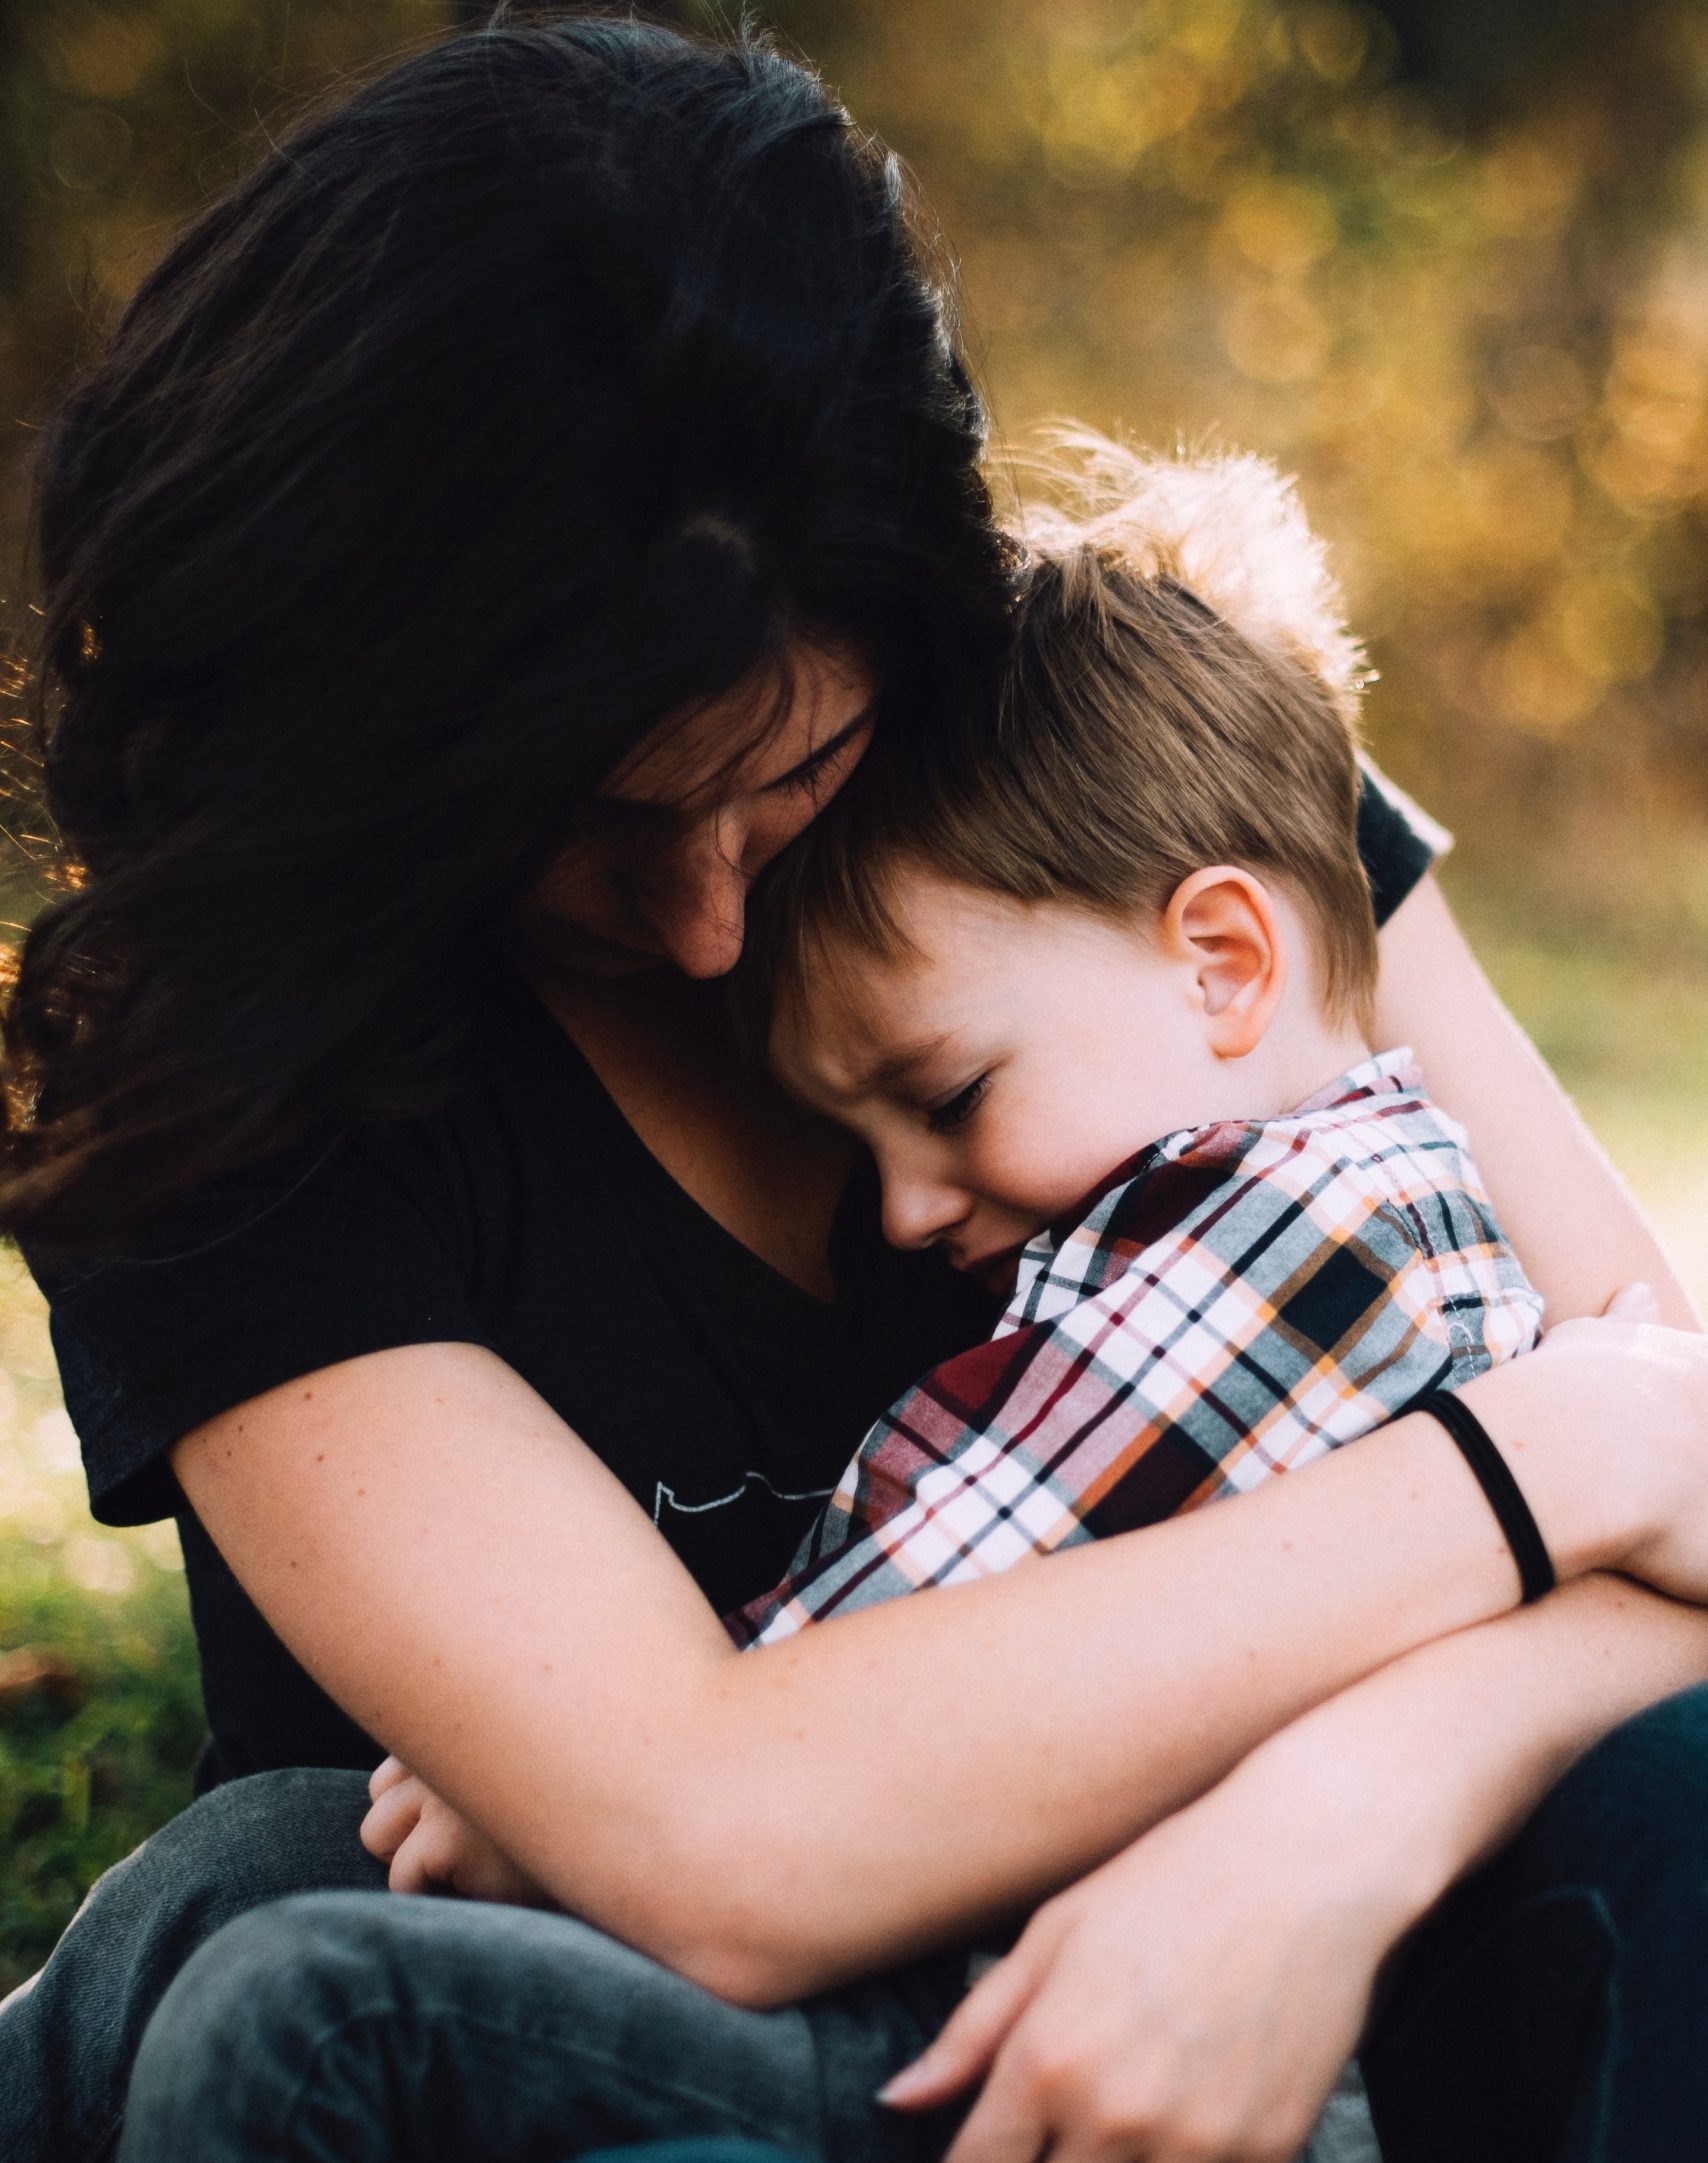 Όταν αρρωσταίνει ένα υπερευαίσθητο παιδί: Μια μαμά δίνει τα καλύτερα tips φροντίδας